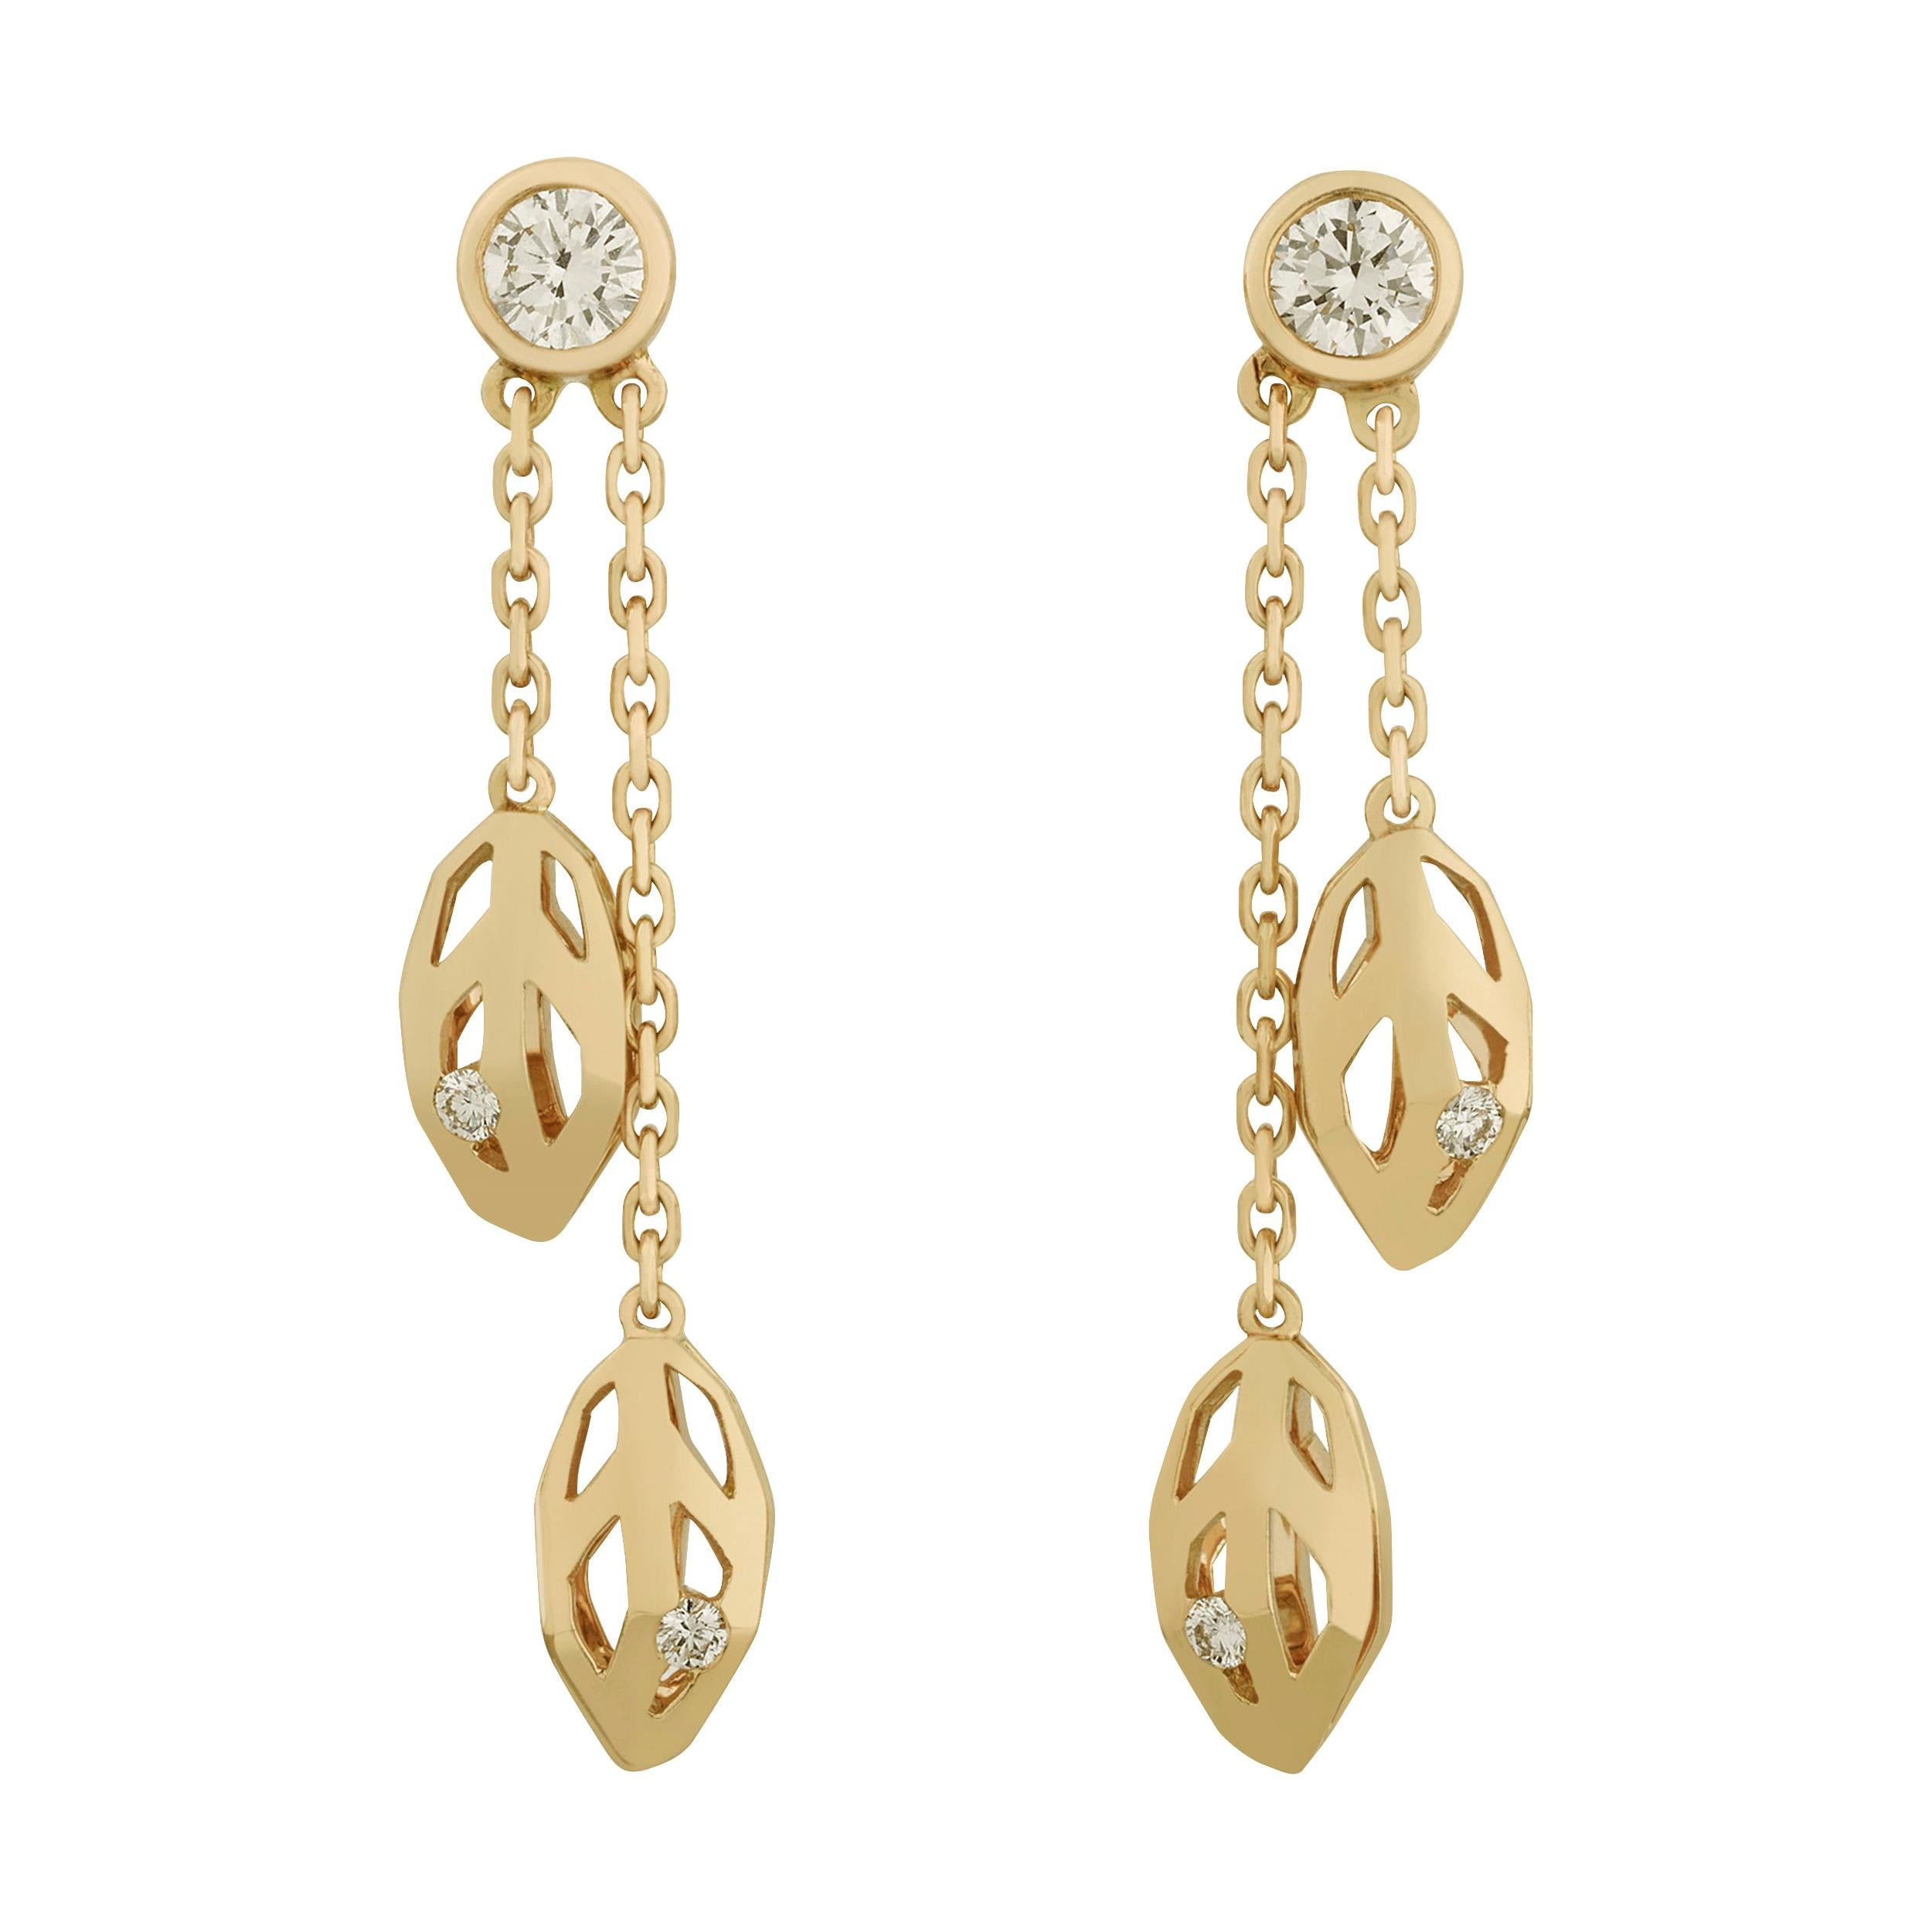 Caresse d'Orchidées Diamond Earrings by Cartier